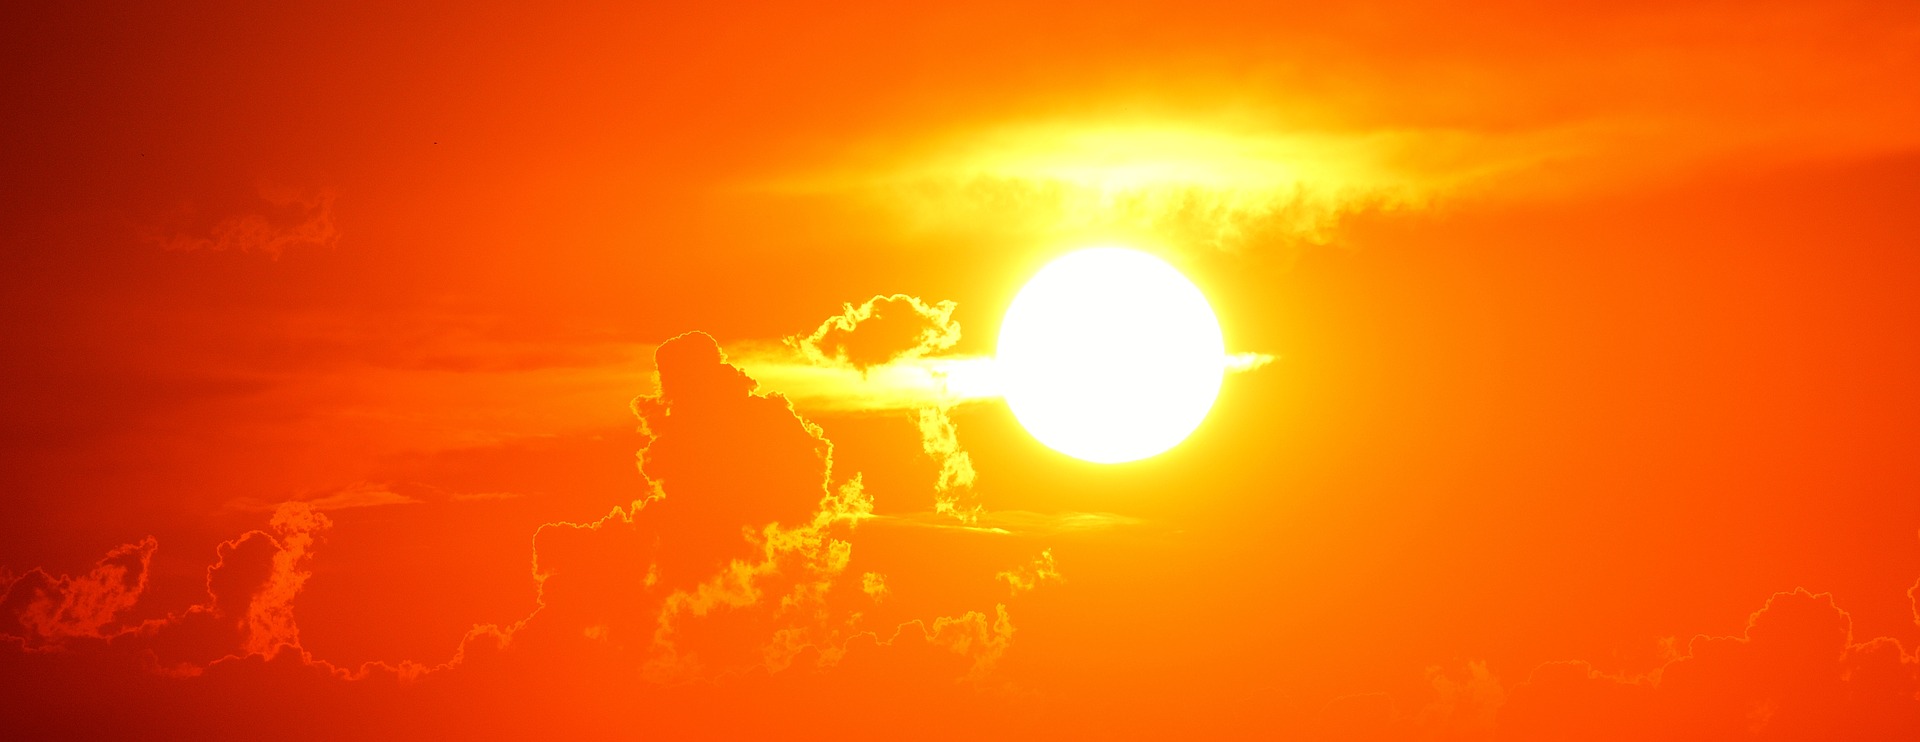 NOVI EVROPSKI REKORD ZA BRIGU Na Siciliji izmjerena temperatura od 48,8 stepeni!